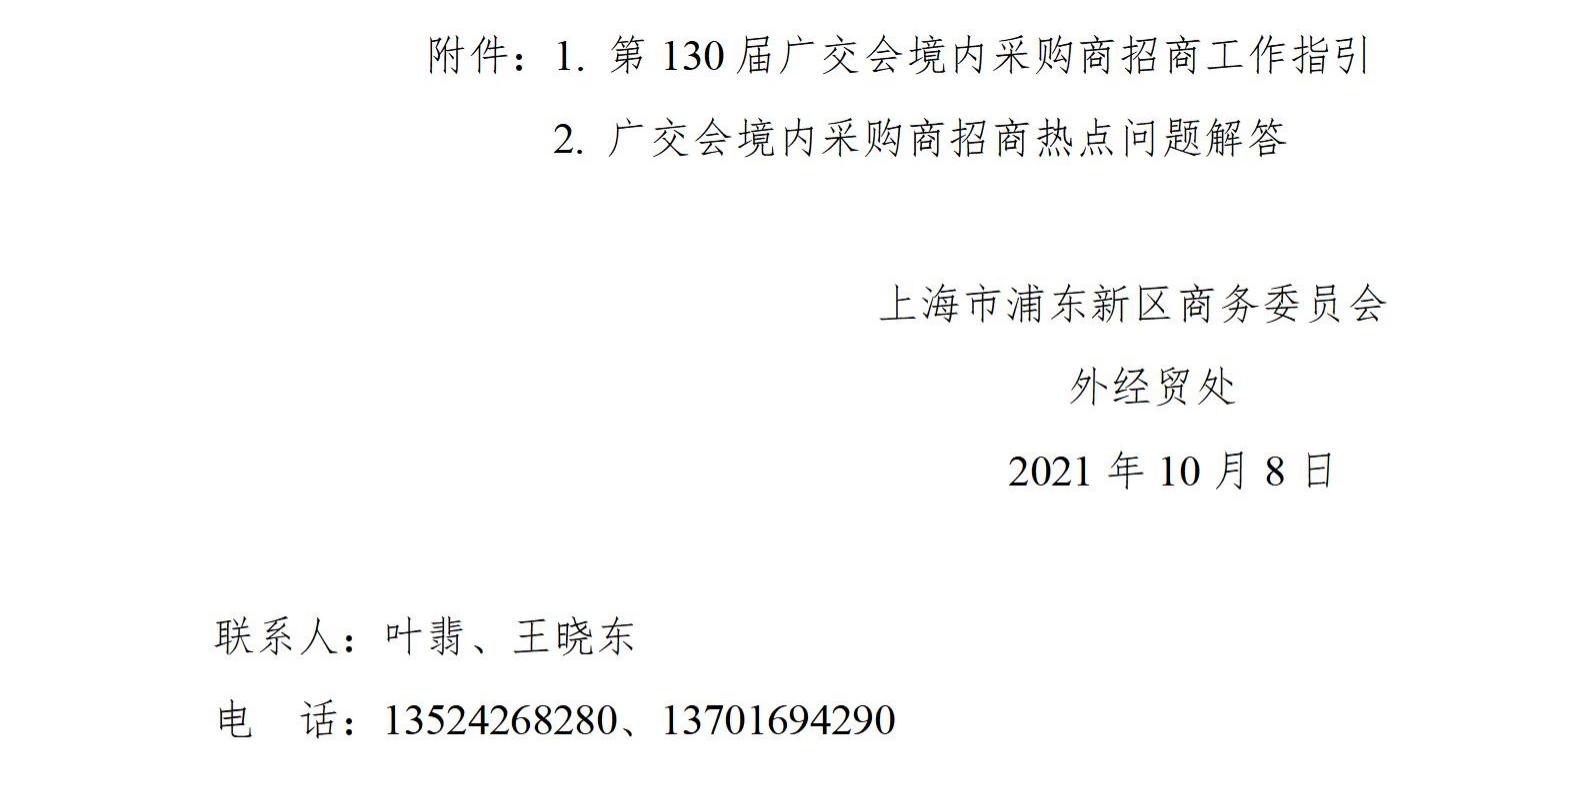 关于邀请境内采购商参加第130届广交会的通知_02.jpg